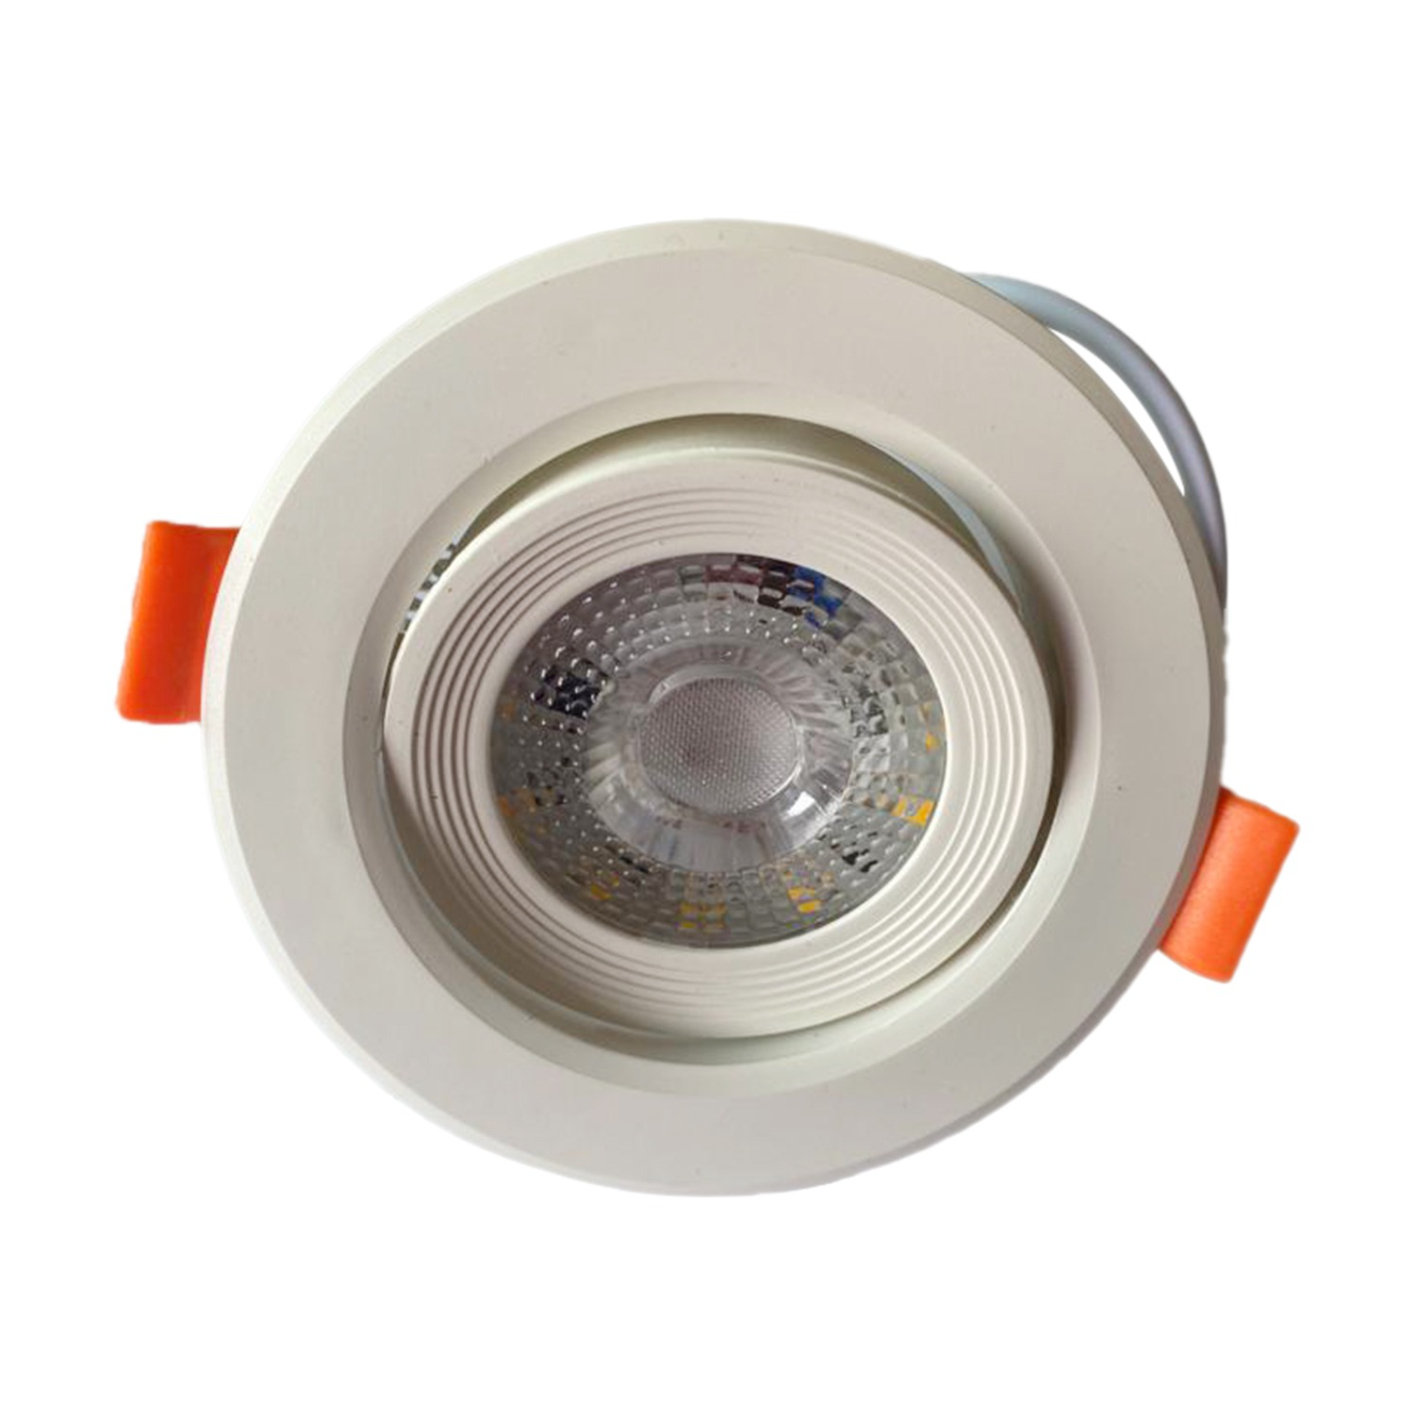 Raspo LED Downlight 3W Lamp white AC 170-265V Spotlight Light Indoor Down Light